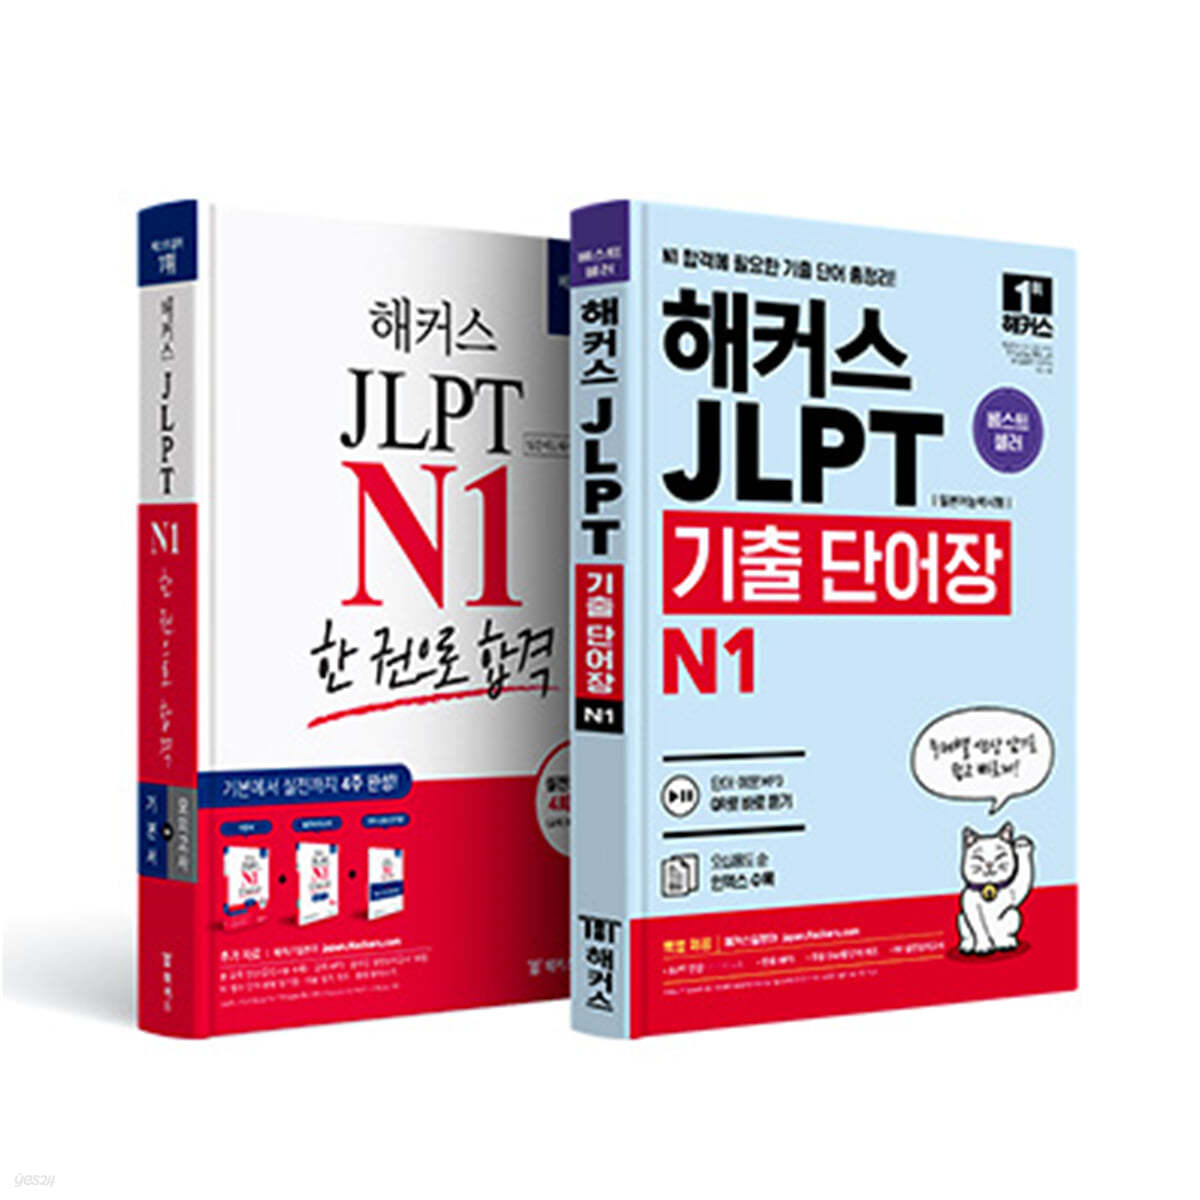 해커스일본어 JLPT 일본어능력시험 N1 기본서 + N1 기출 단어장 세트